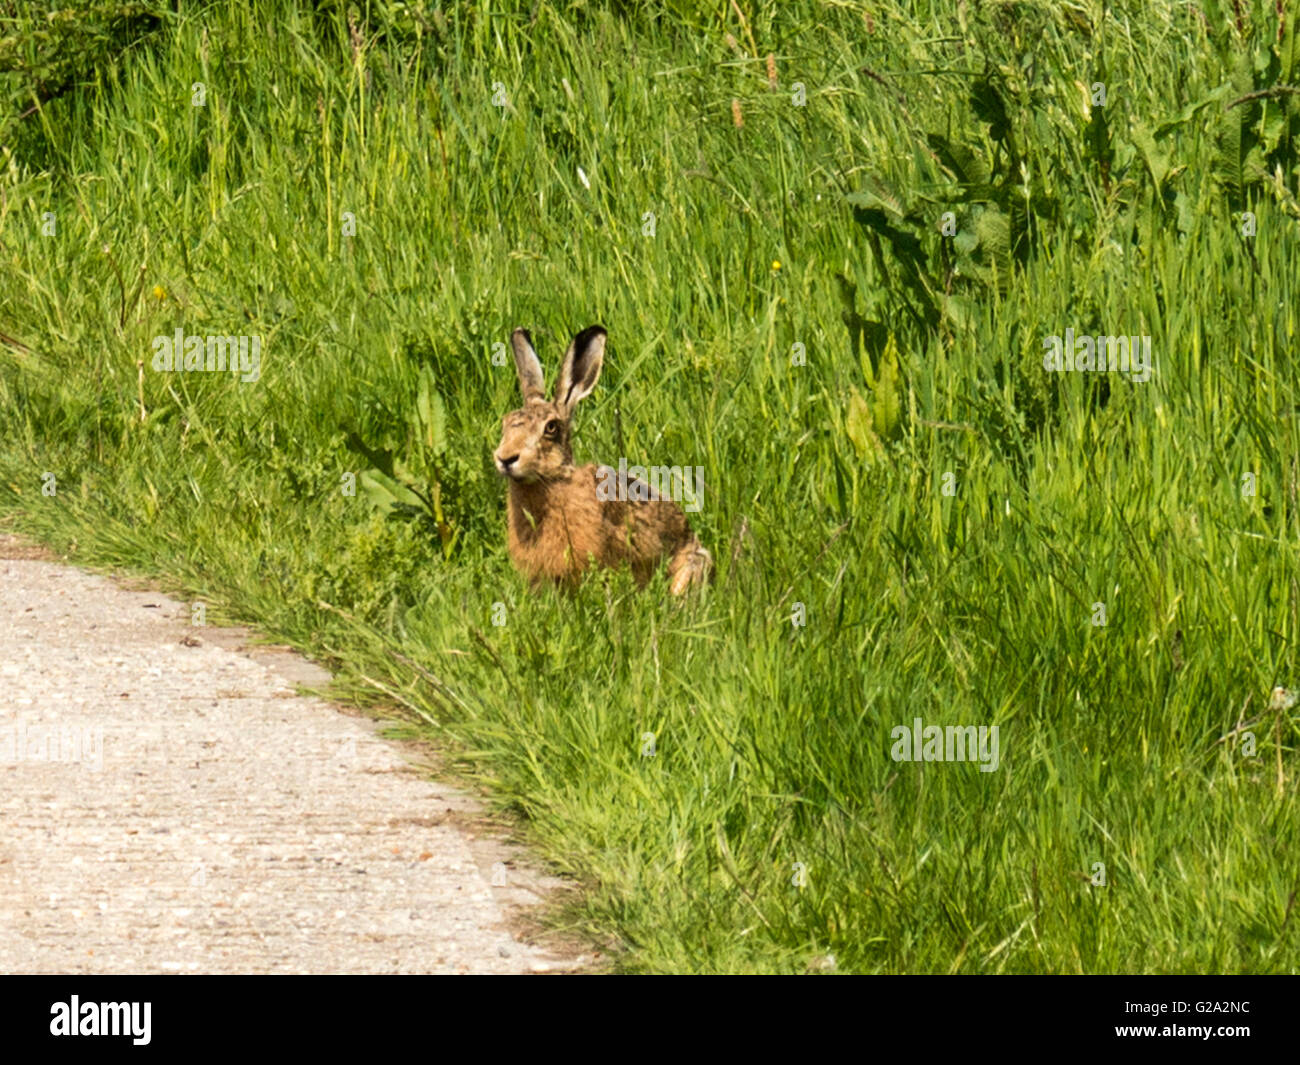 Magnifico marrone selvatico lepre (Lepus europaeus) misurazione illustrato nei suoi dintorni, isolata contro erba verde dello sfondo. Foto Stock